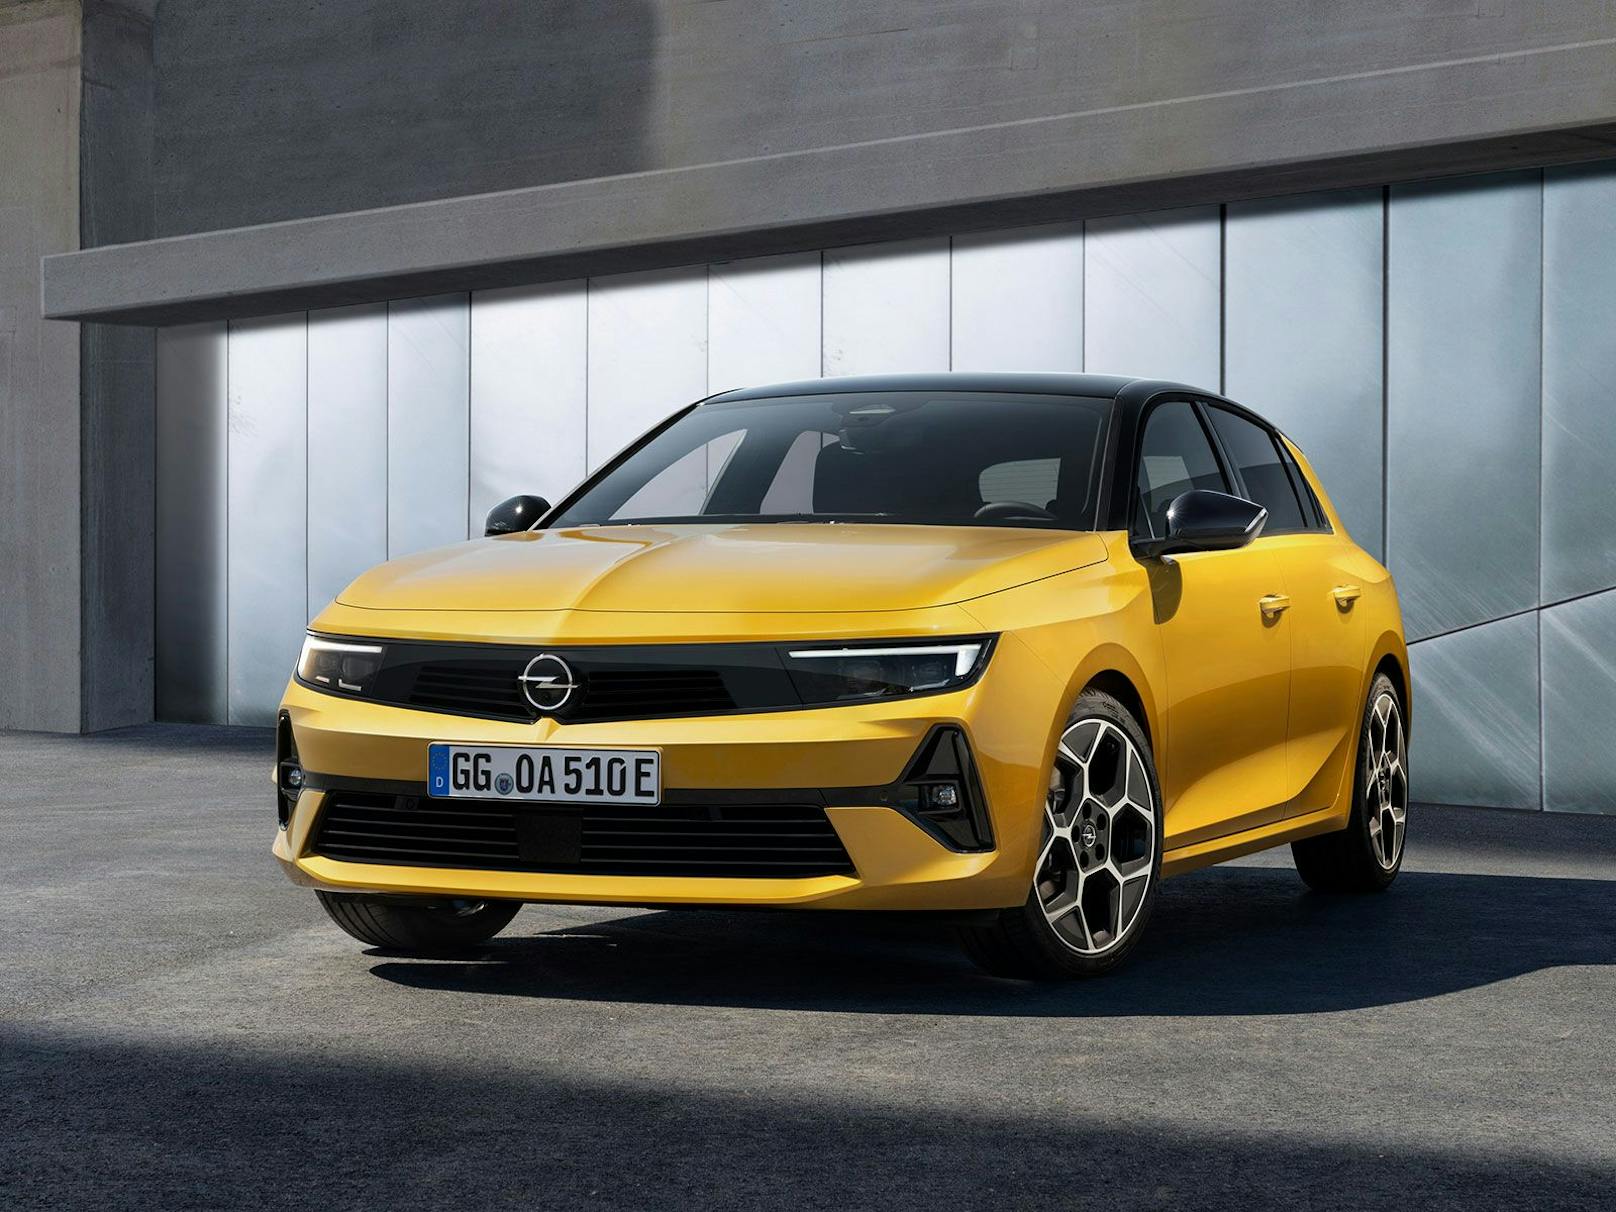 Frontpartie mit dem neuen Opel Vizor-Design